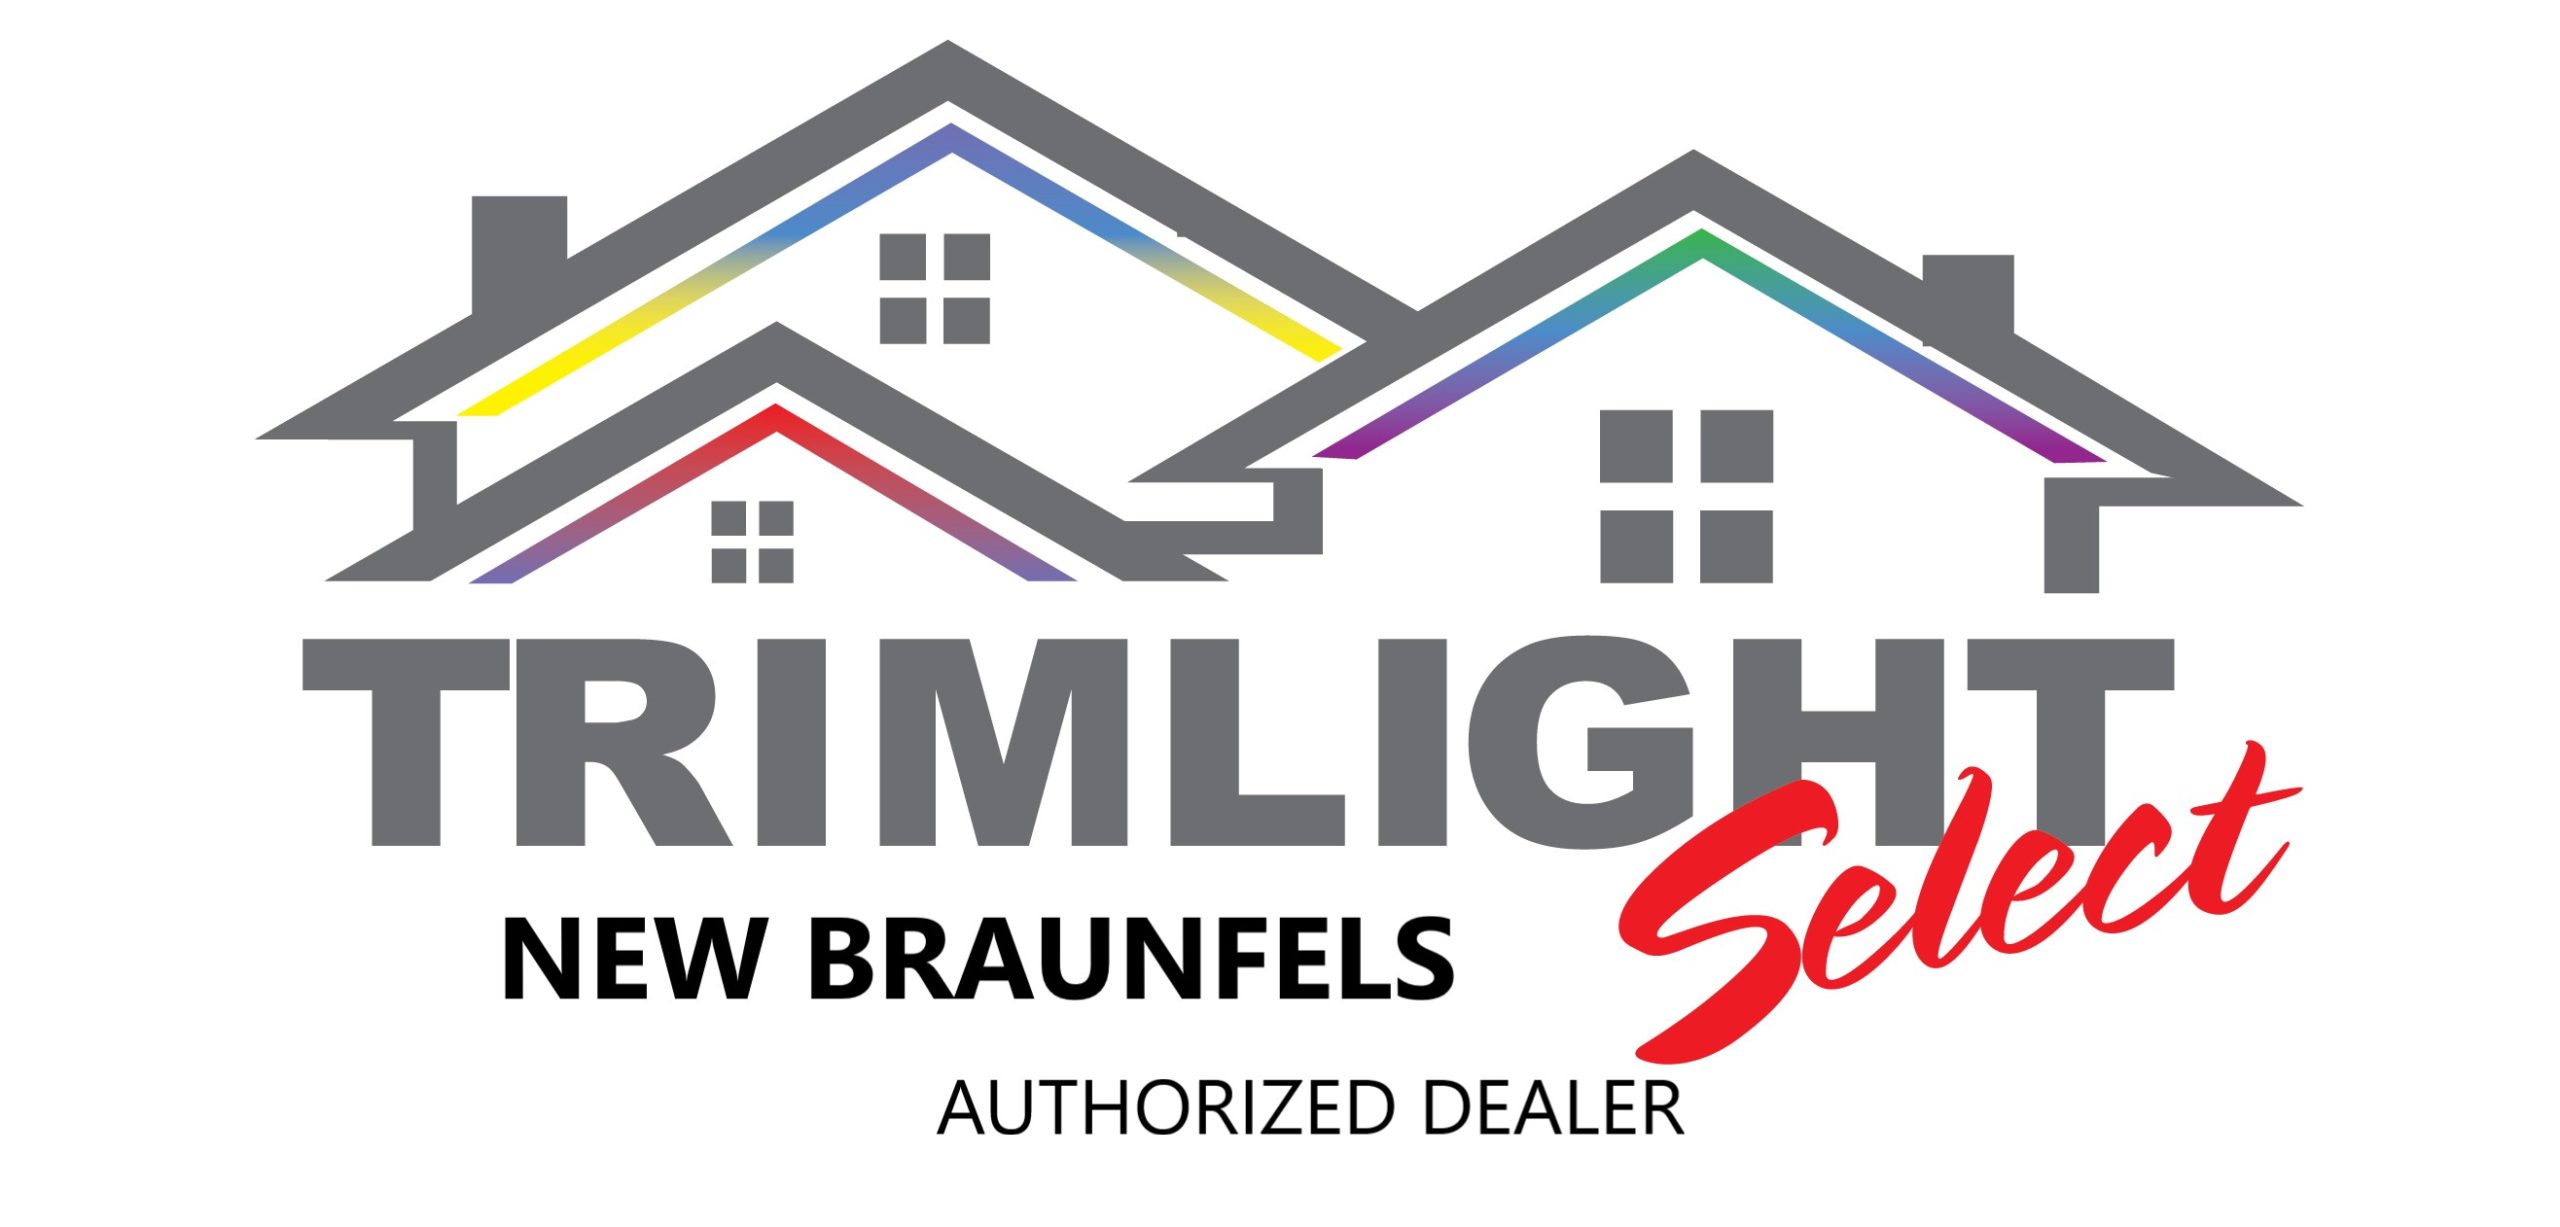 New Braunfels Trimlight